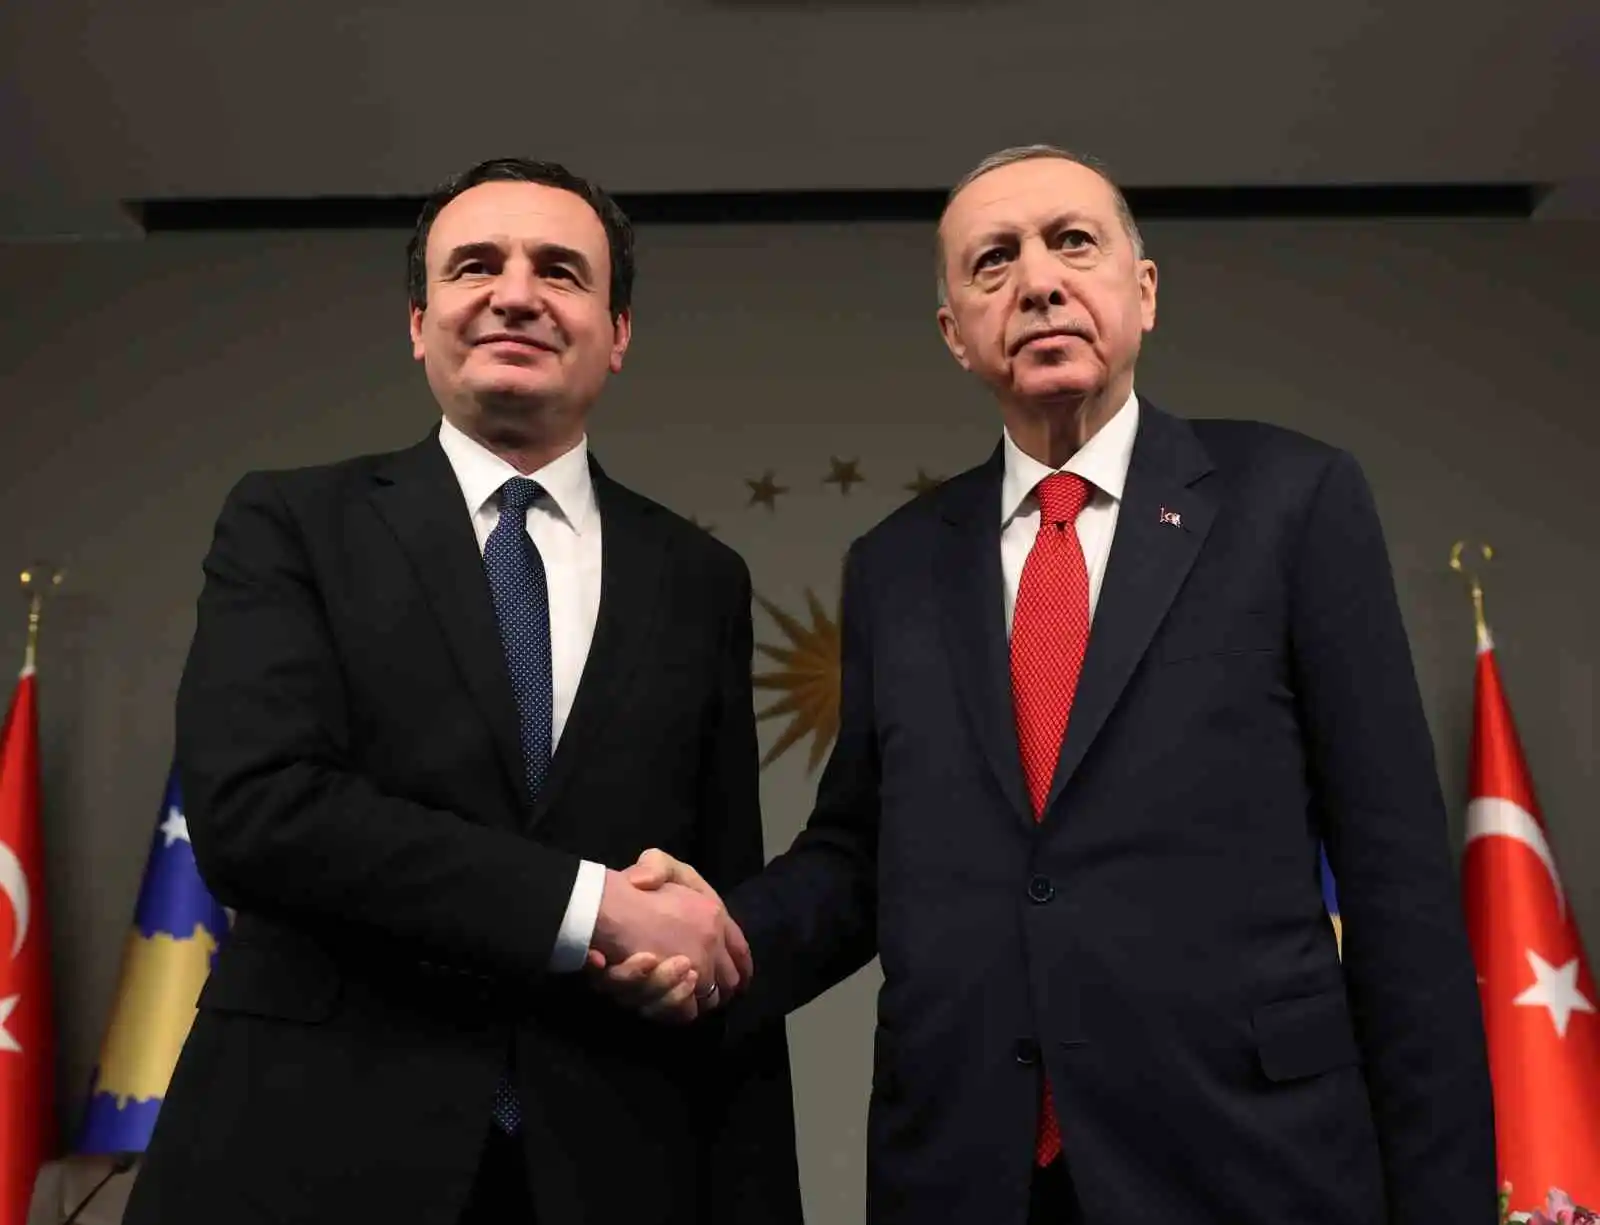 Cumhurbaşkanı Erdoğan: "Kosova'ya en çok ihracat yapan ülke konumundayız"
